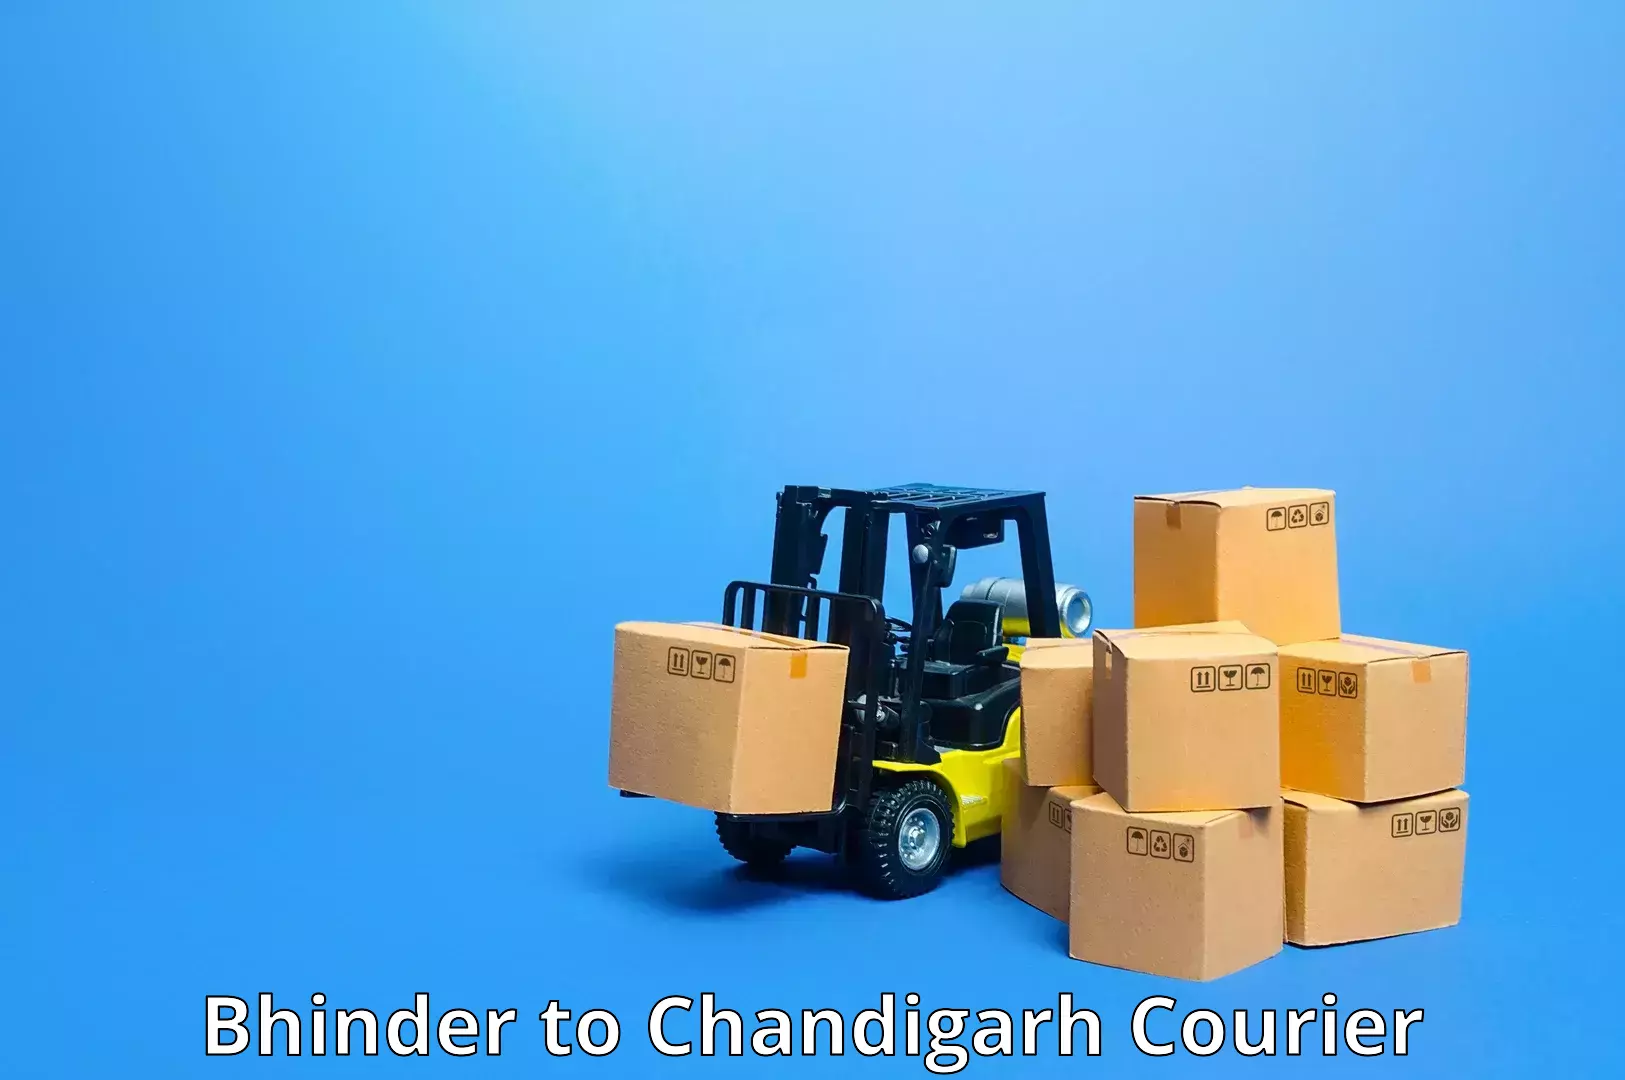 Courier service comparison Bhinder to Chandigarh